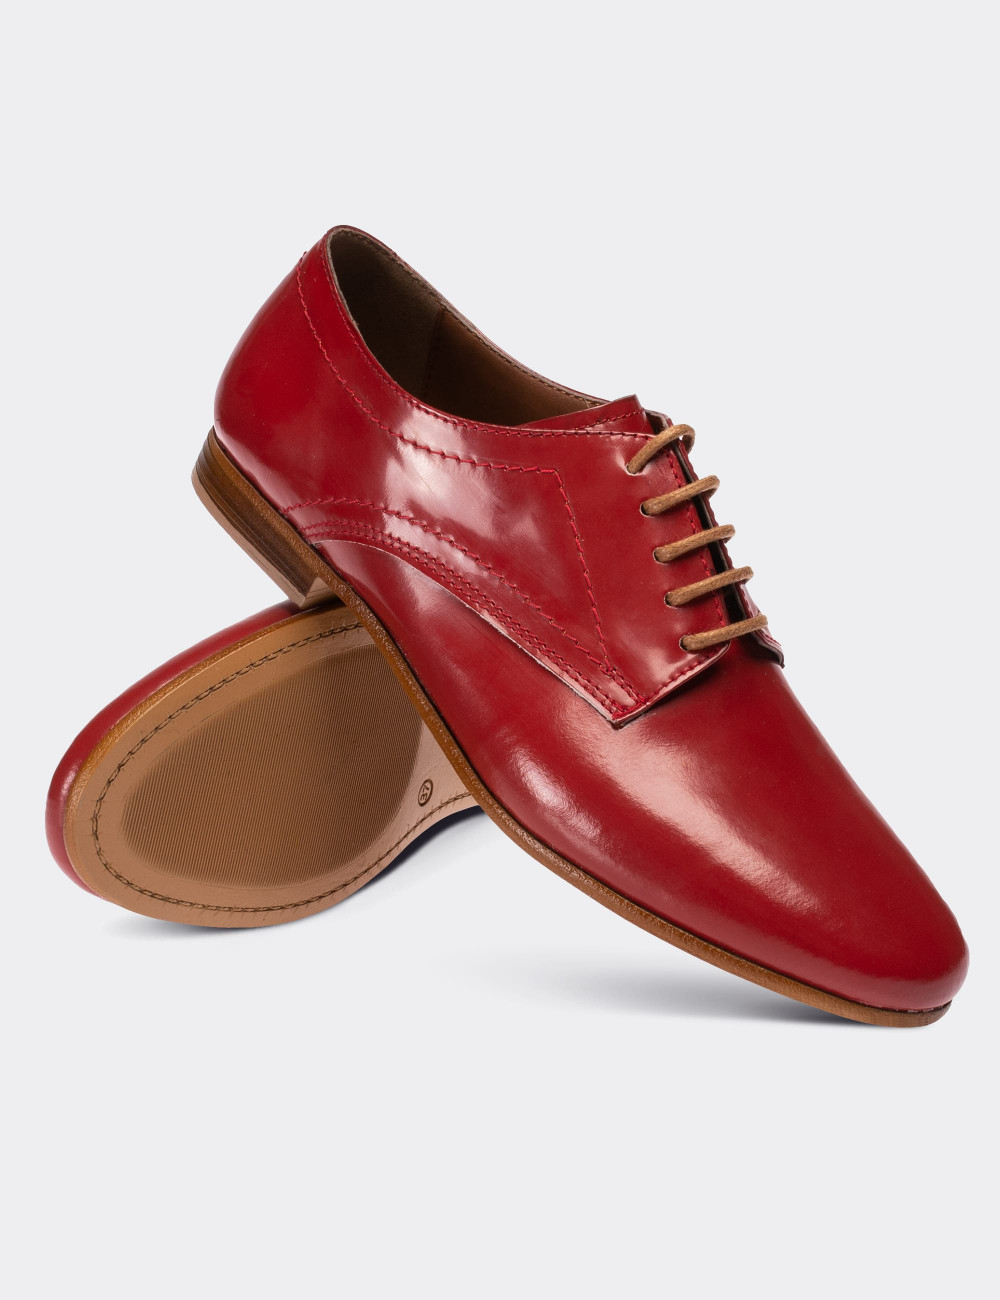 Hakiki Deri Kırmızı Günlük Kadın Ayakkabı - 01430ZKRMC04